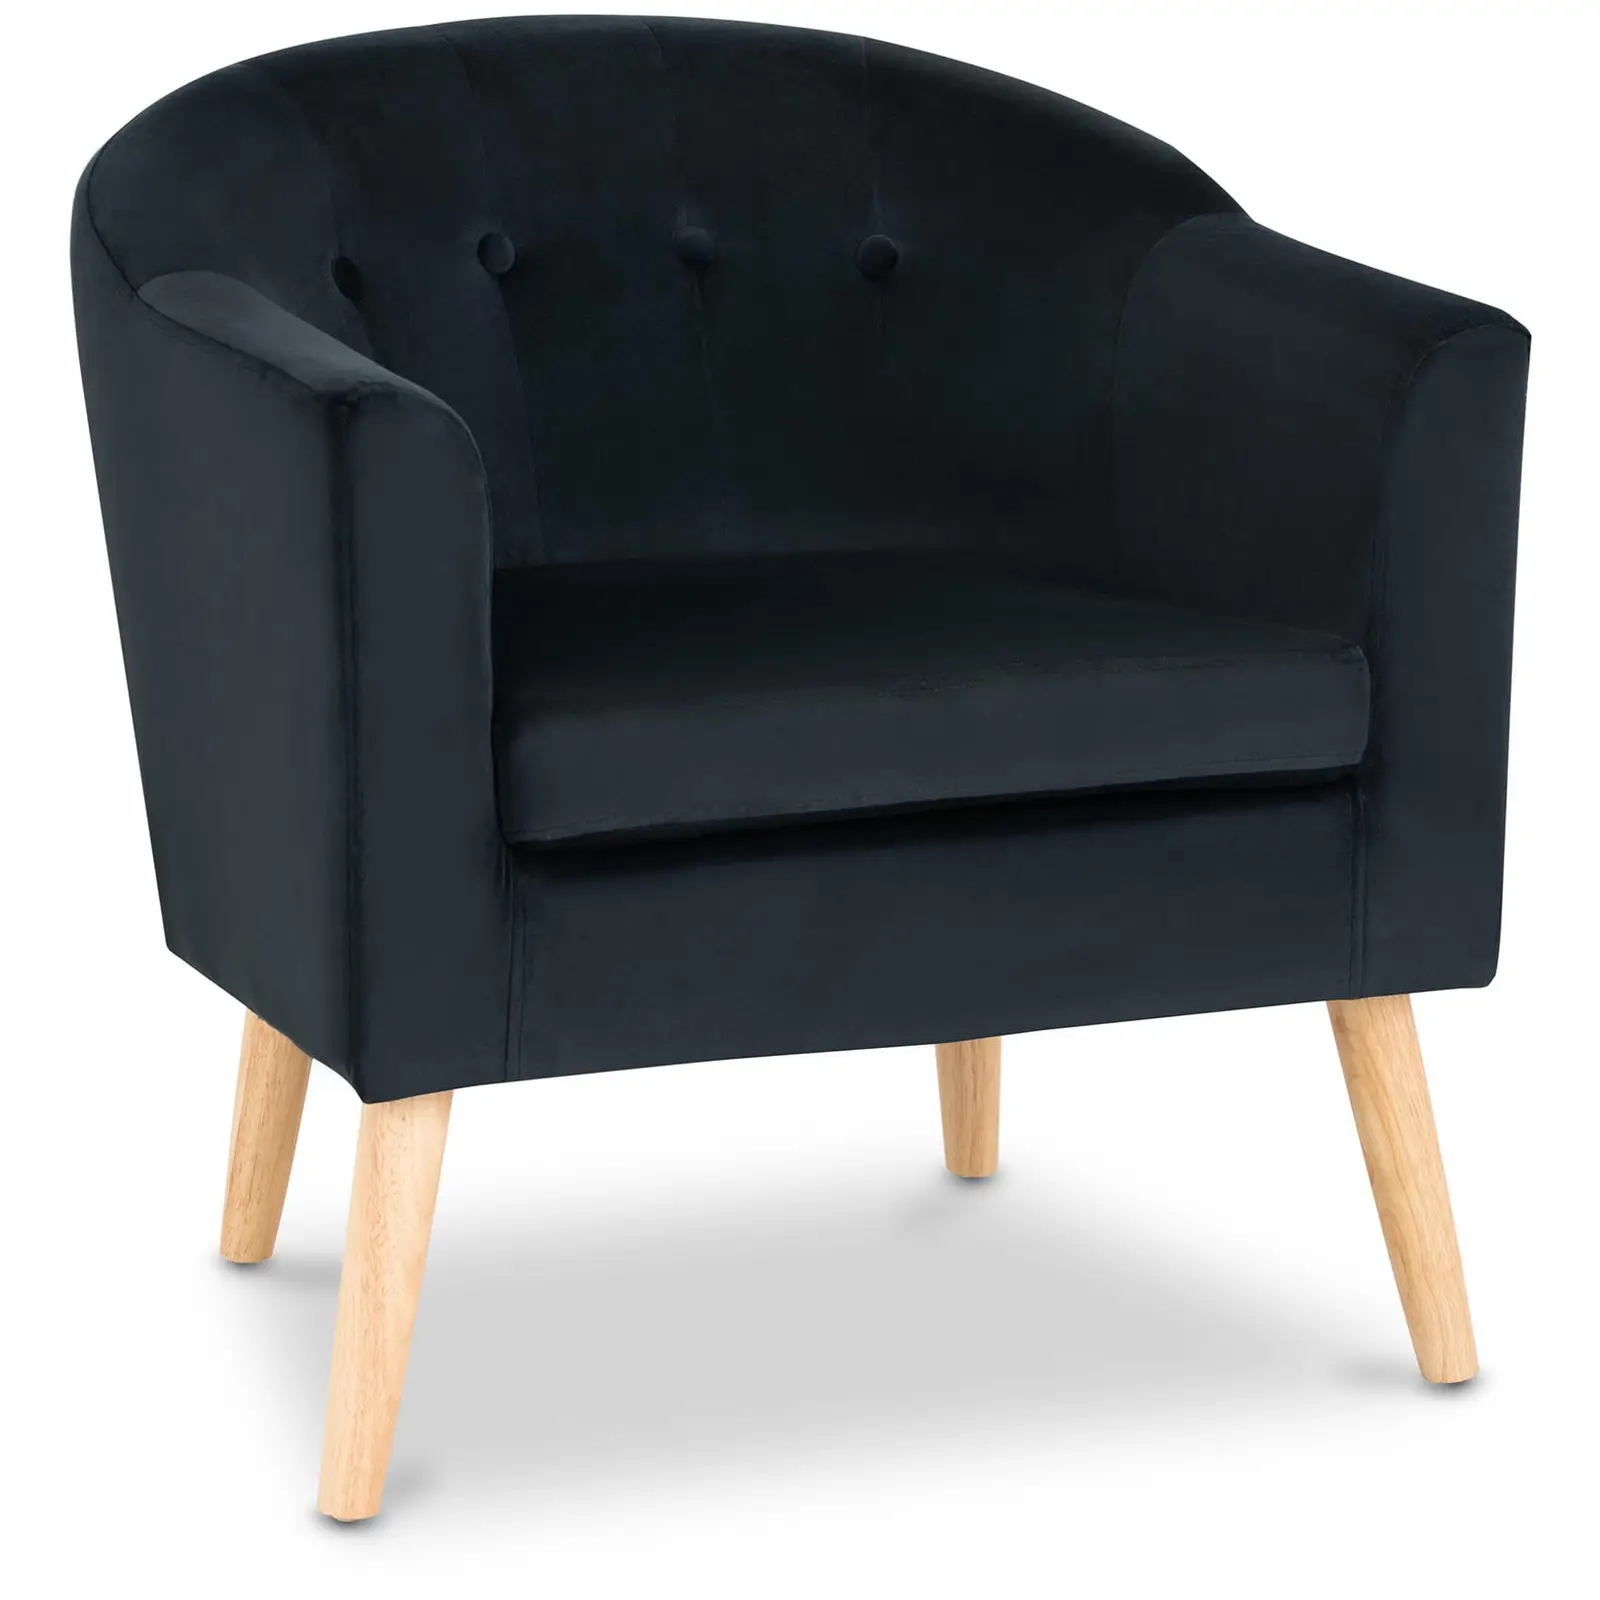 Chaise en tissu - 180 kg max. - Surface d'assise de 49 x 53 cm - Coloris noir